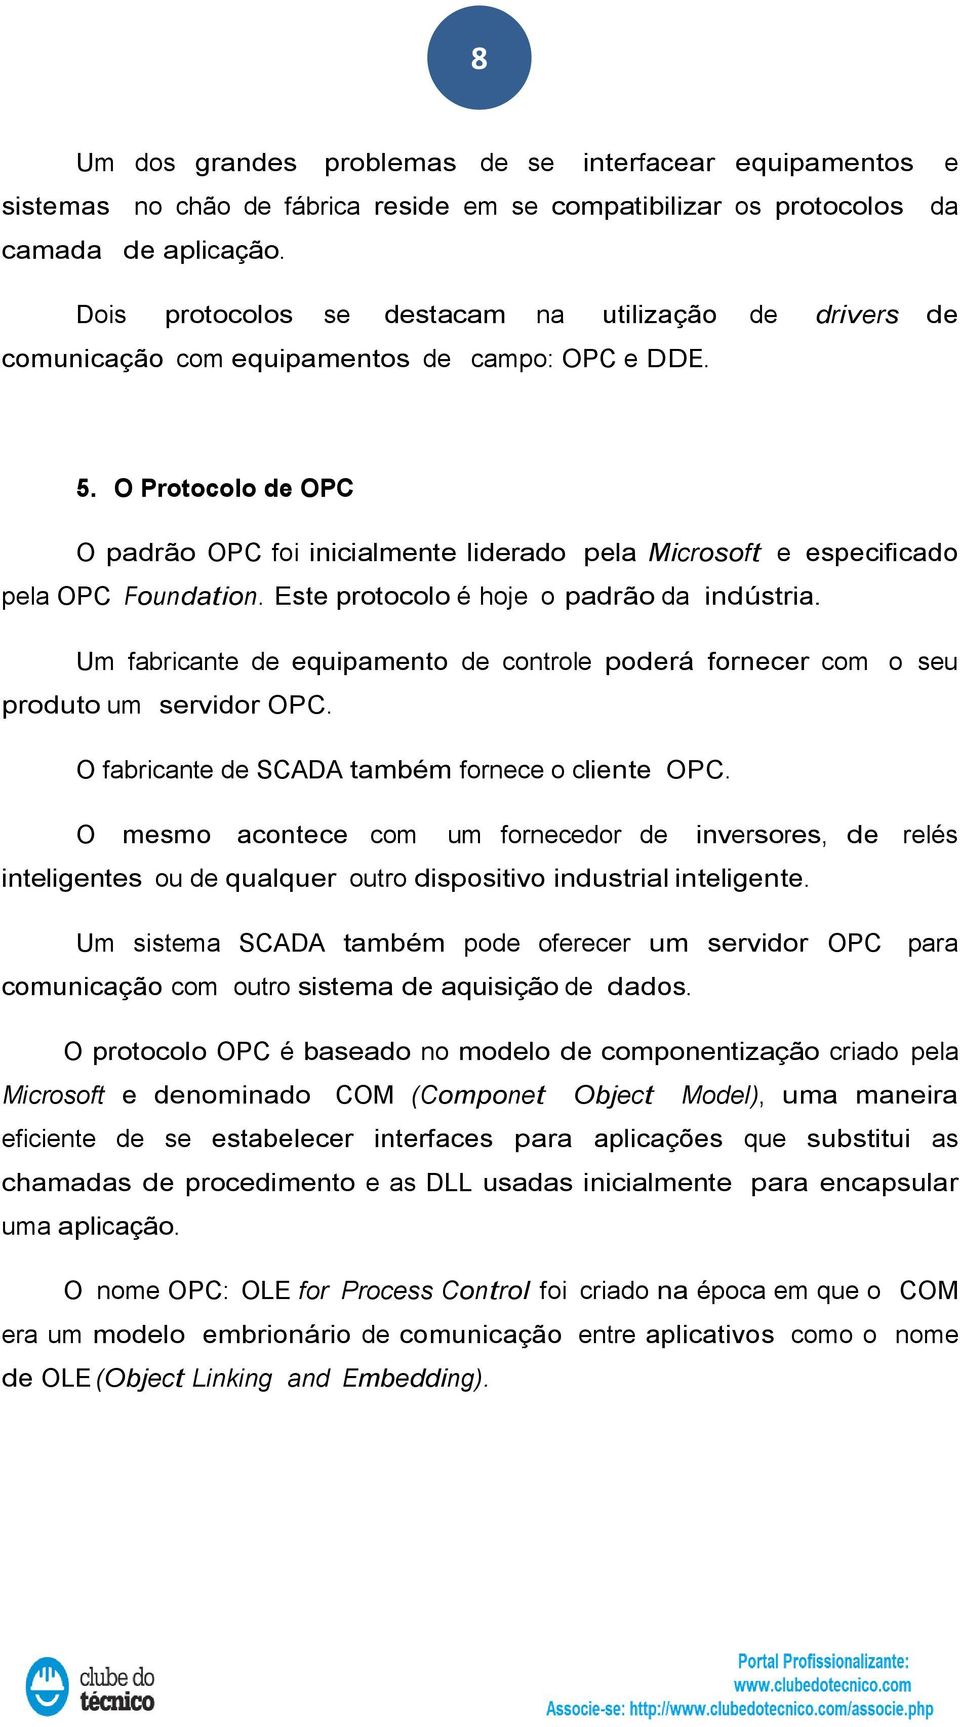 O Protocolo de OPC O padrão OPC foi inicialmente liderado pela Microsoft e especificado pela OPC Foundation. Este protocolo é hoje o padrão da indústria.